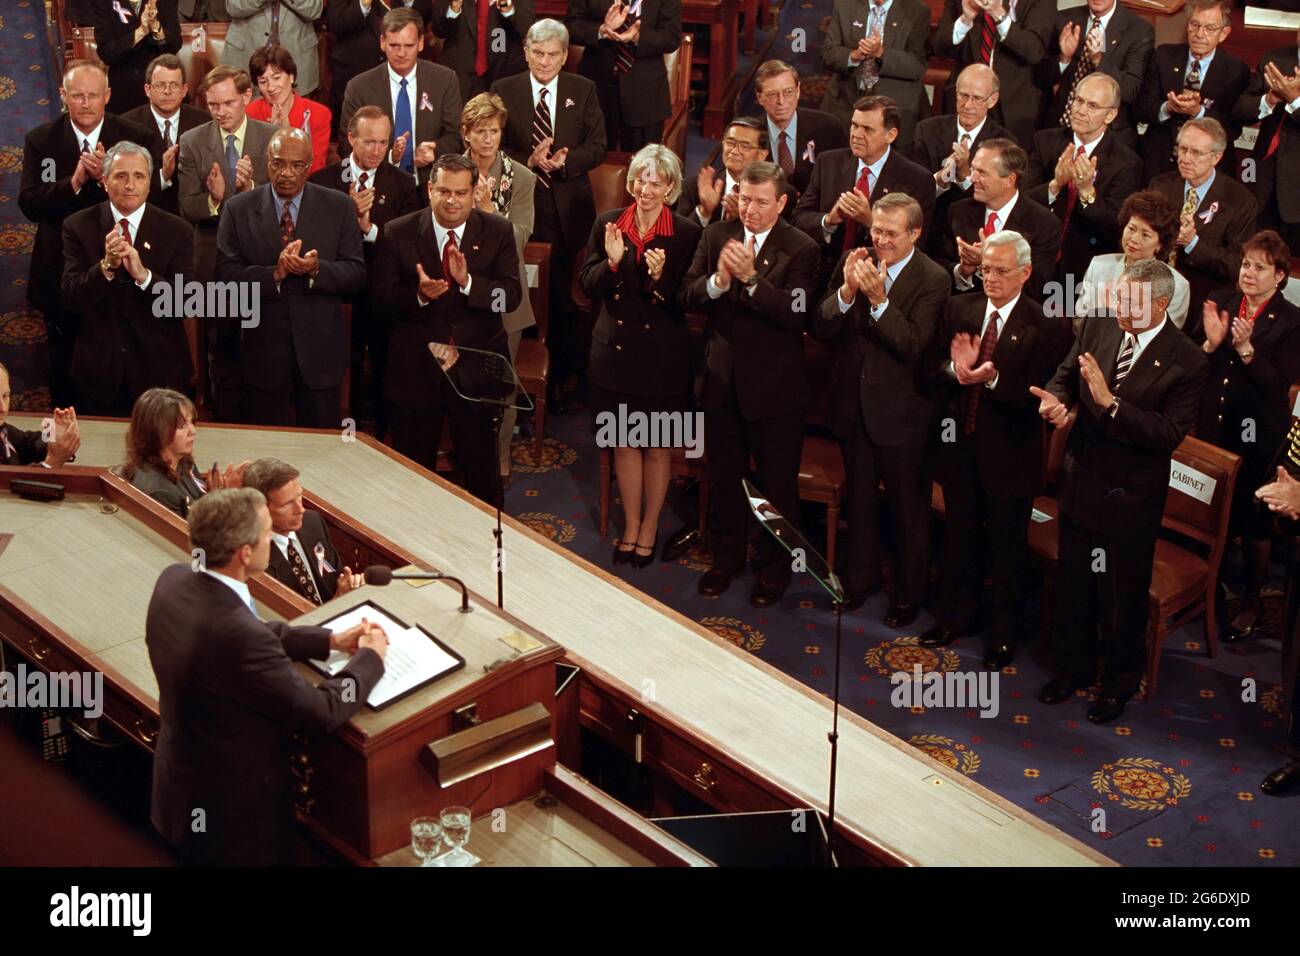 Präsident George W. Bush hält eine Rede zu den Terroranschlägen vom 11. September auf die Vereinigten Staaten auf einer gemeinsamen Sitzung des Kongresses am Donnerstag, den 20. September 2001, im US-Kapitol. Foto von Paul Morse, mit freundlicher Genehmigung der George W. Bush Presidential Library Stockfoto